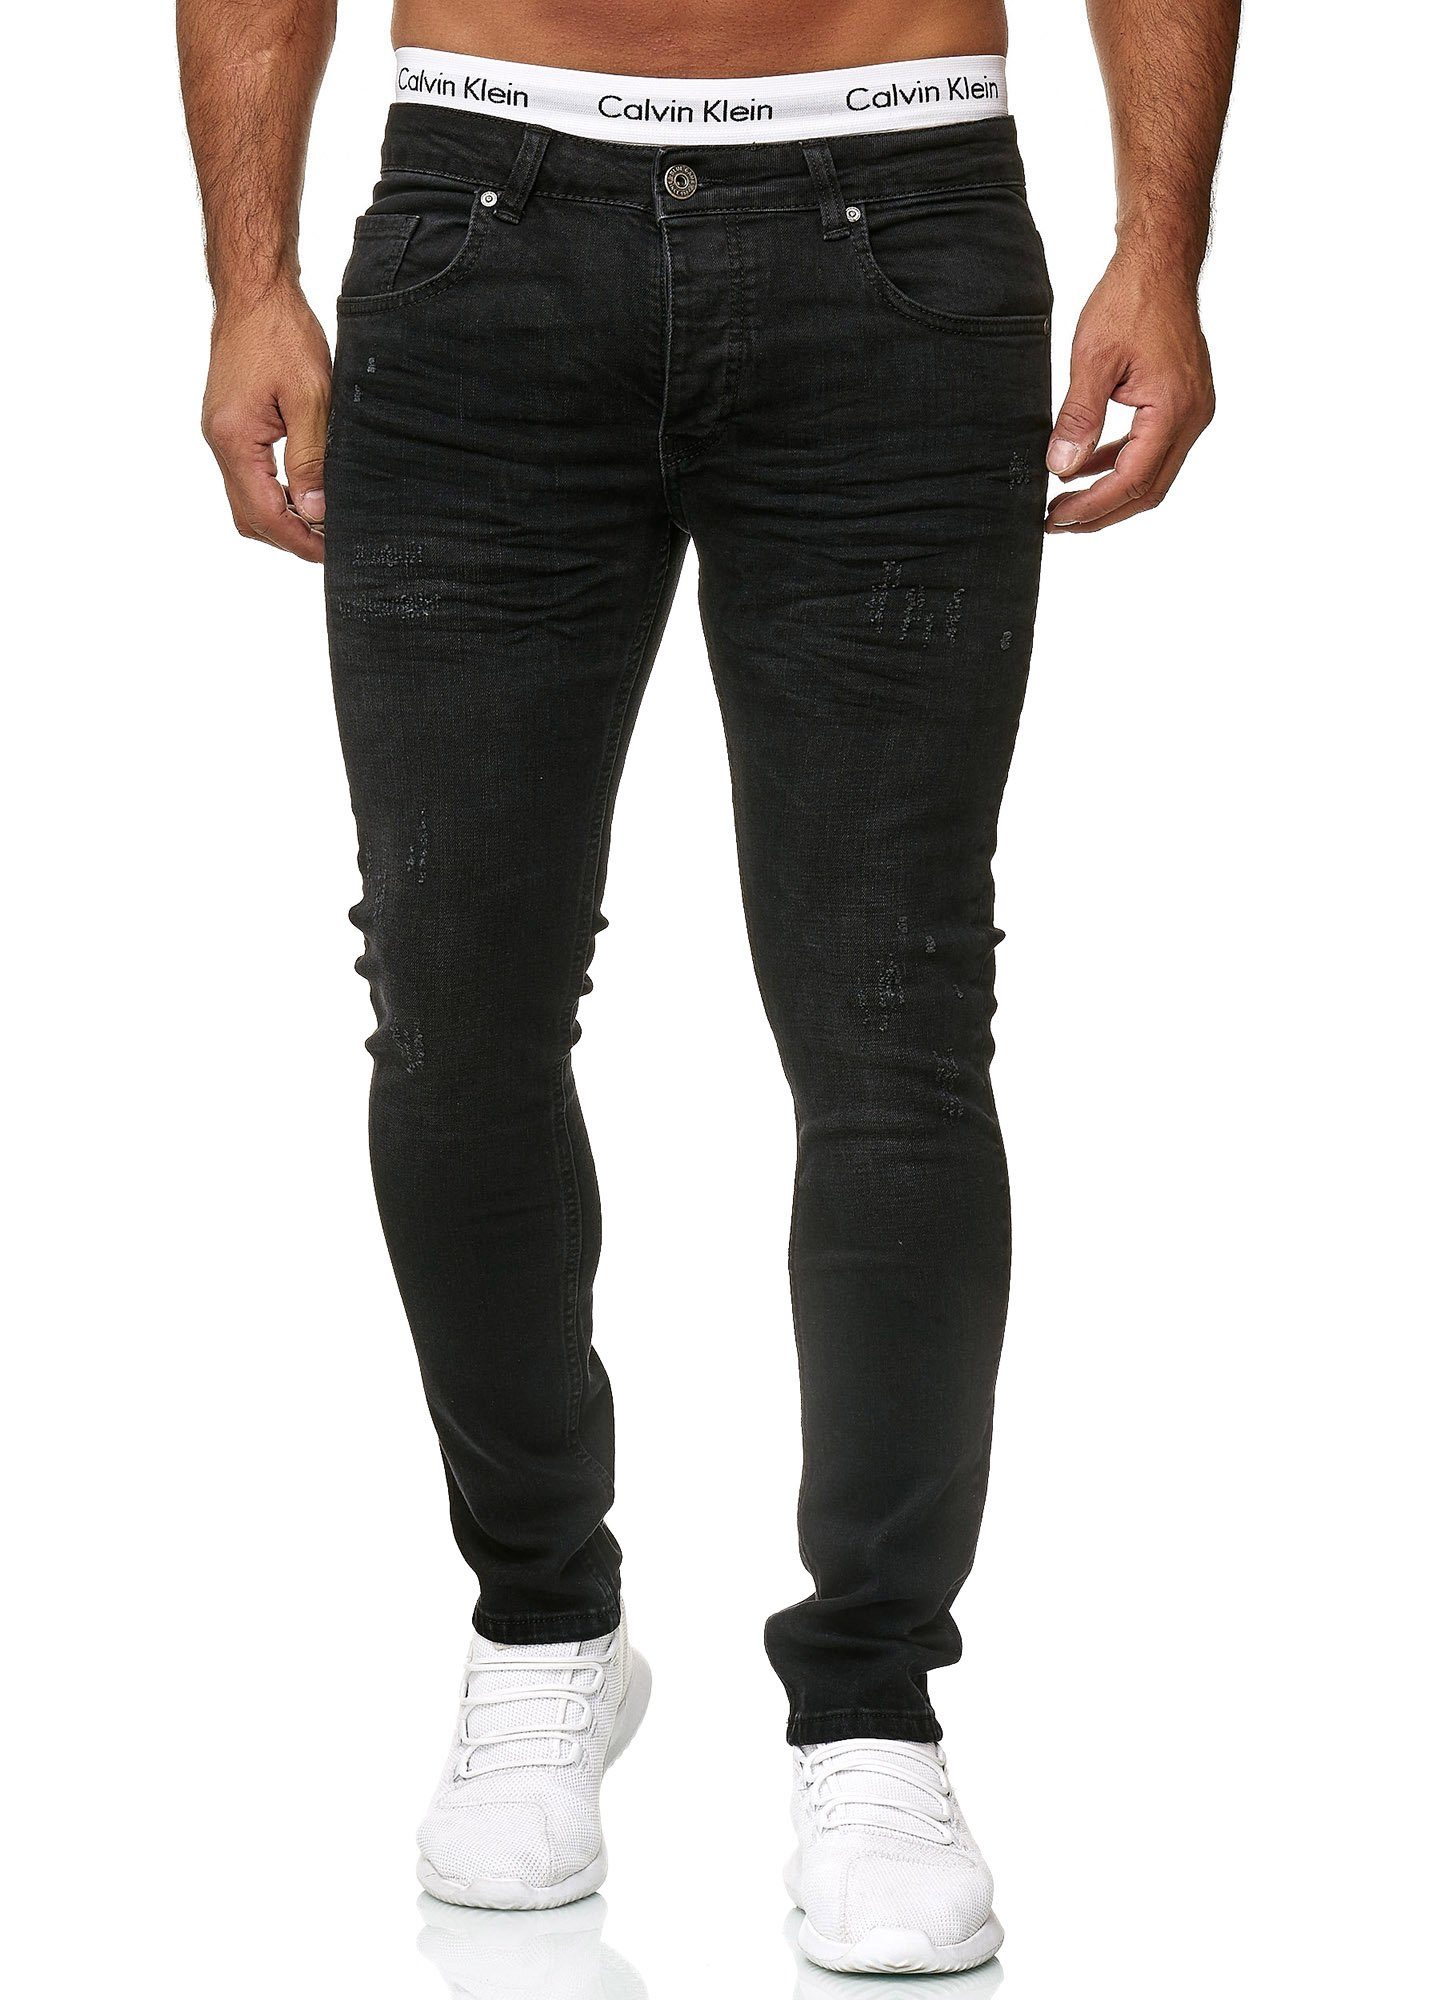 Black Basic Code47 Fit Skinny 603 Used Herren Regular Skinny-fit-Jeans Code47 Midnight Designer Jeanshose Jeans Hose